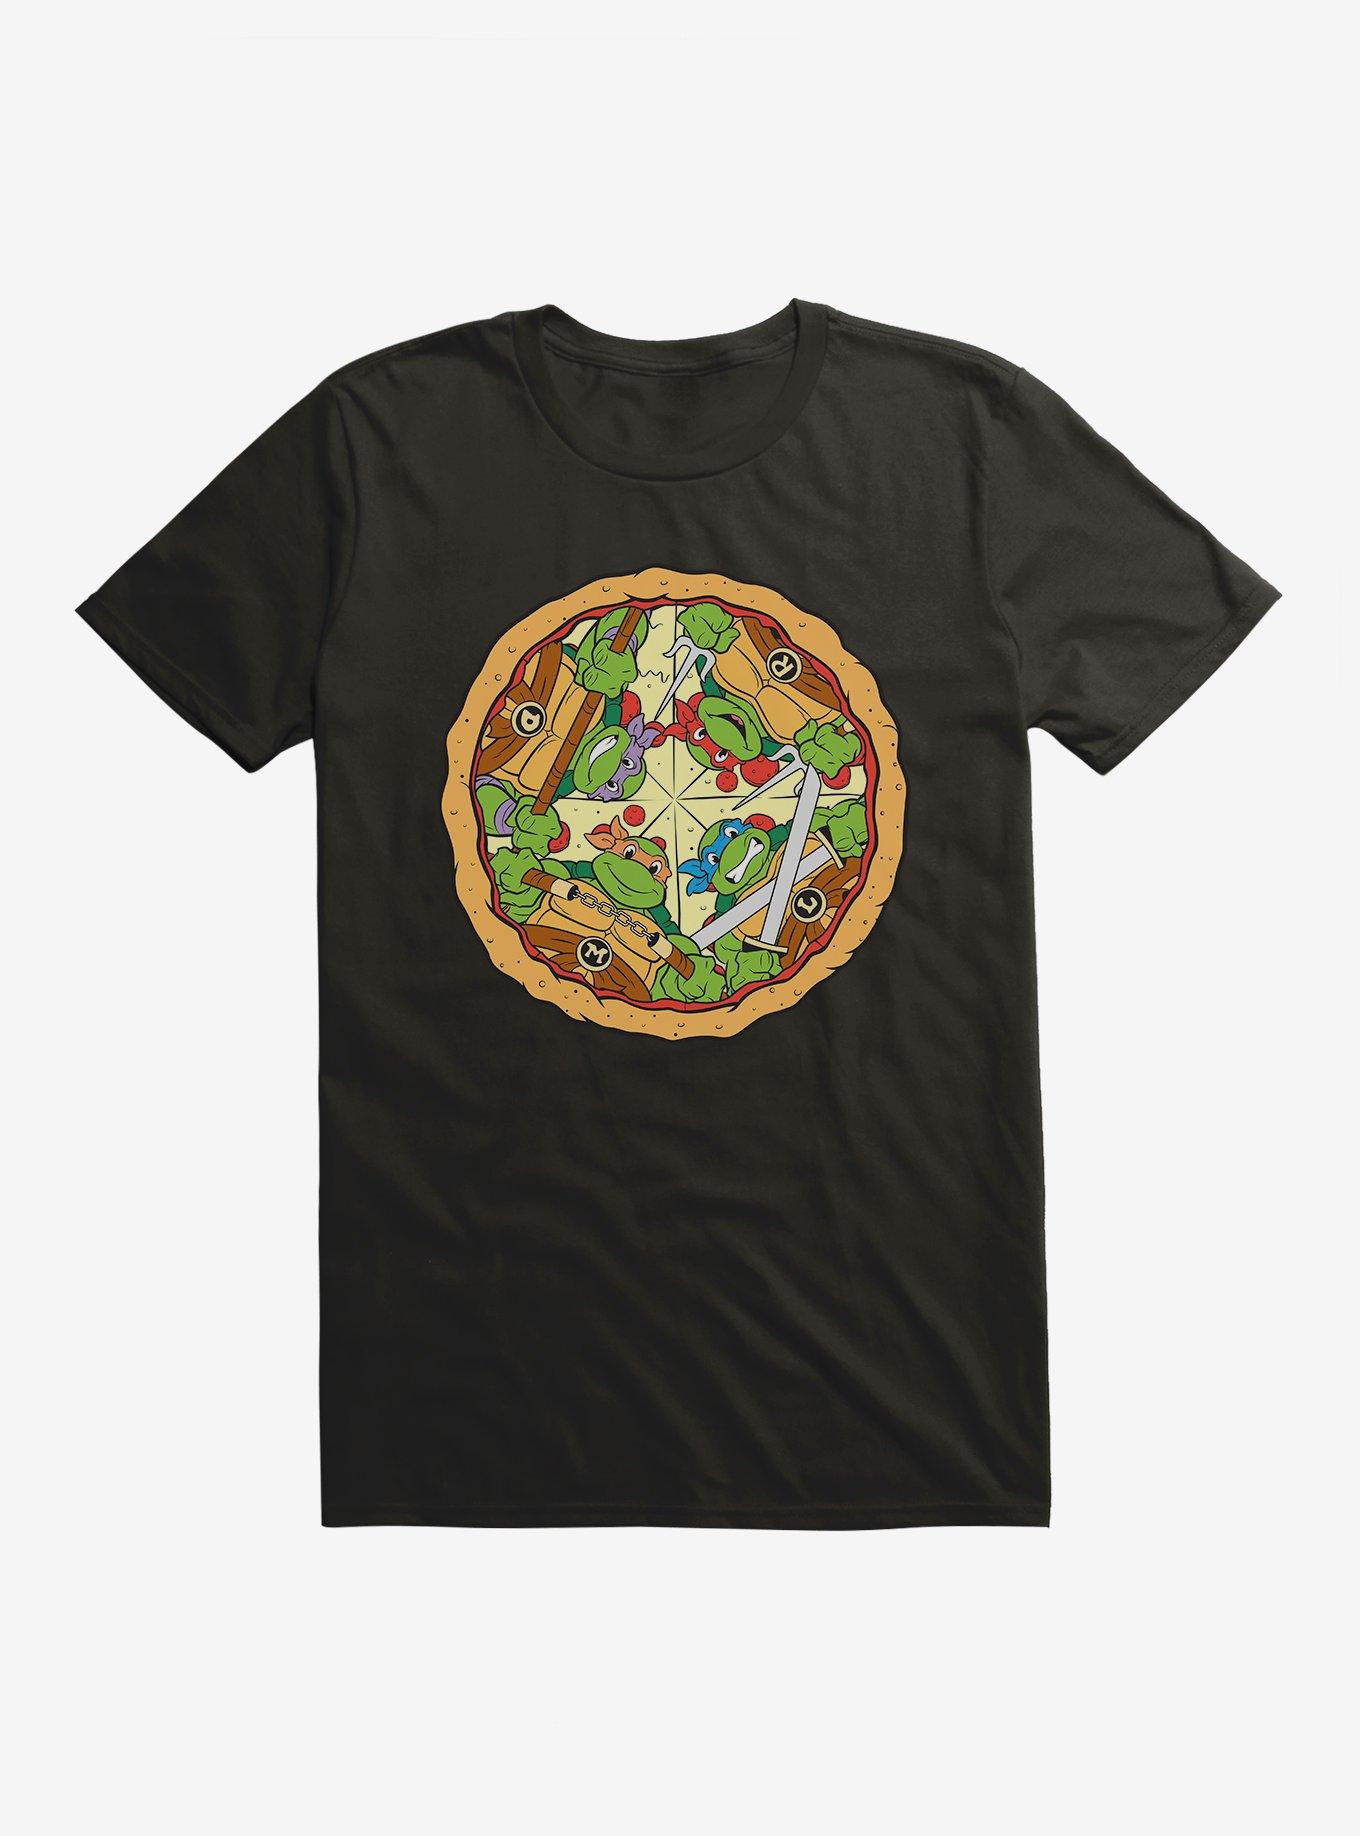 Teenage Mutant Ninja Turtles Group On Pizza Slices T-Shirt